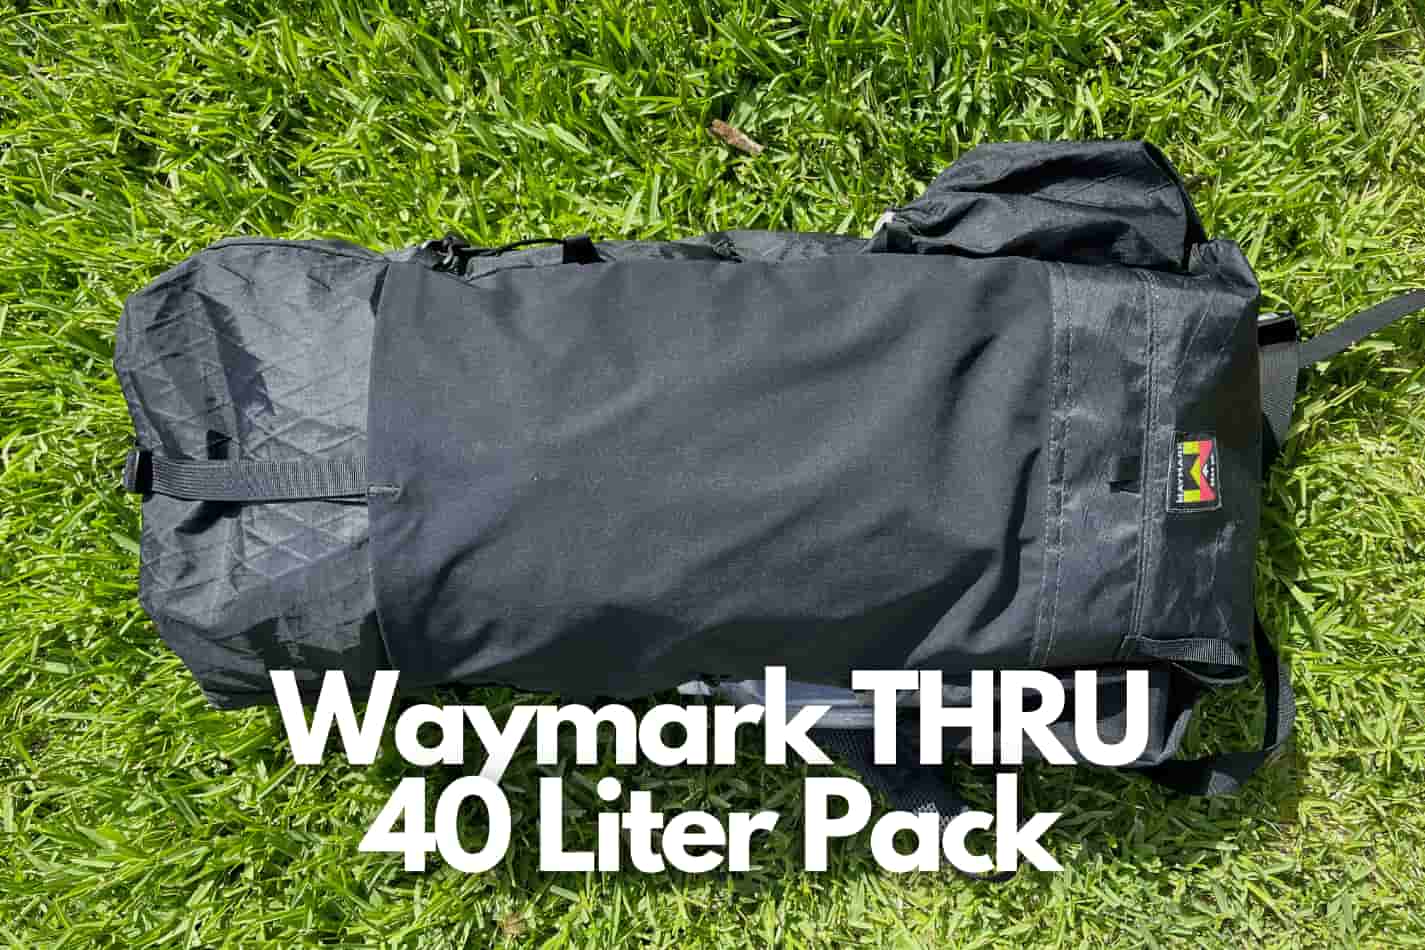 waymark gear thru review - backpack on grass